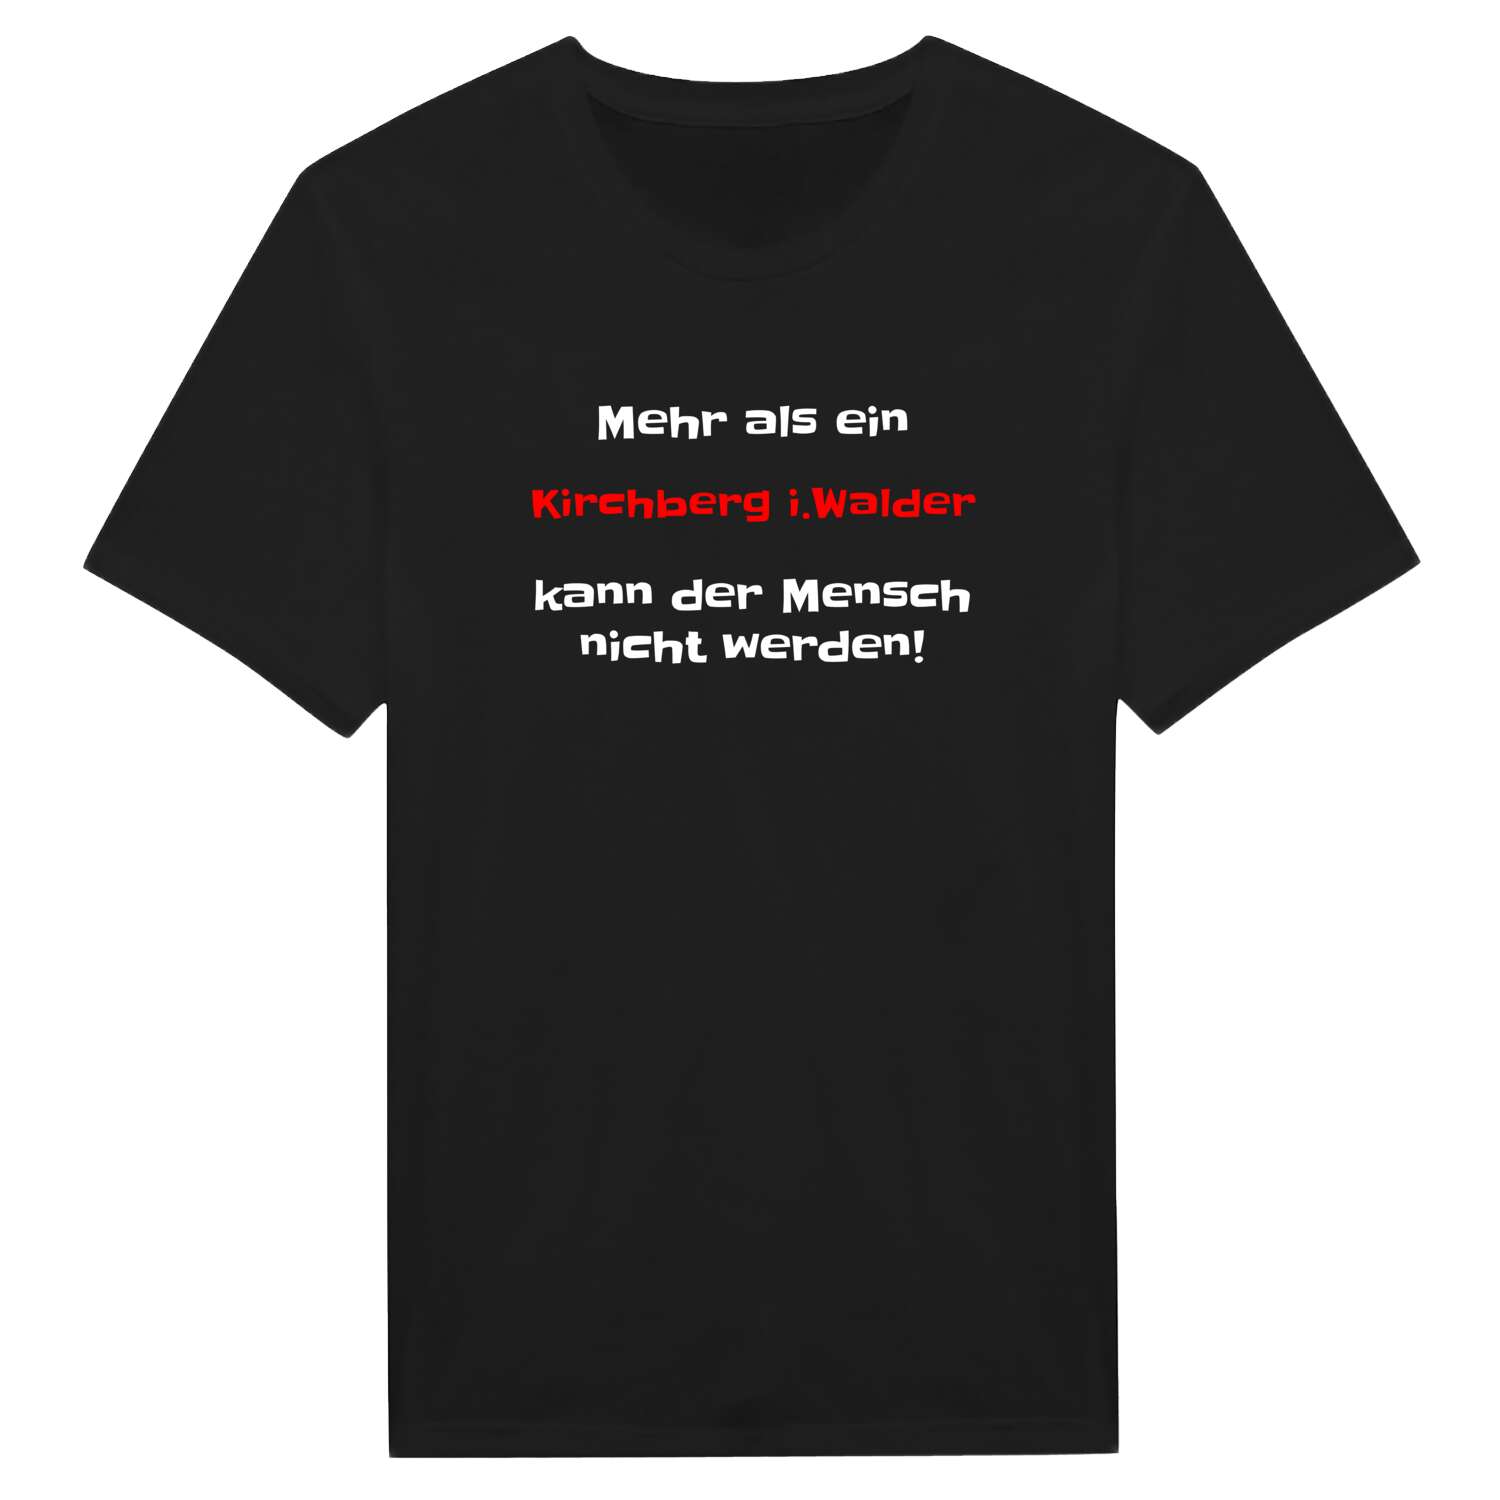 Kirchberg i.Wald T-Shirt »Mehr als ein«